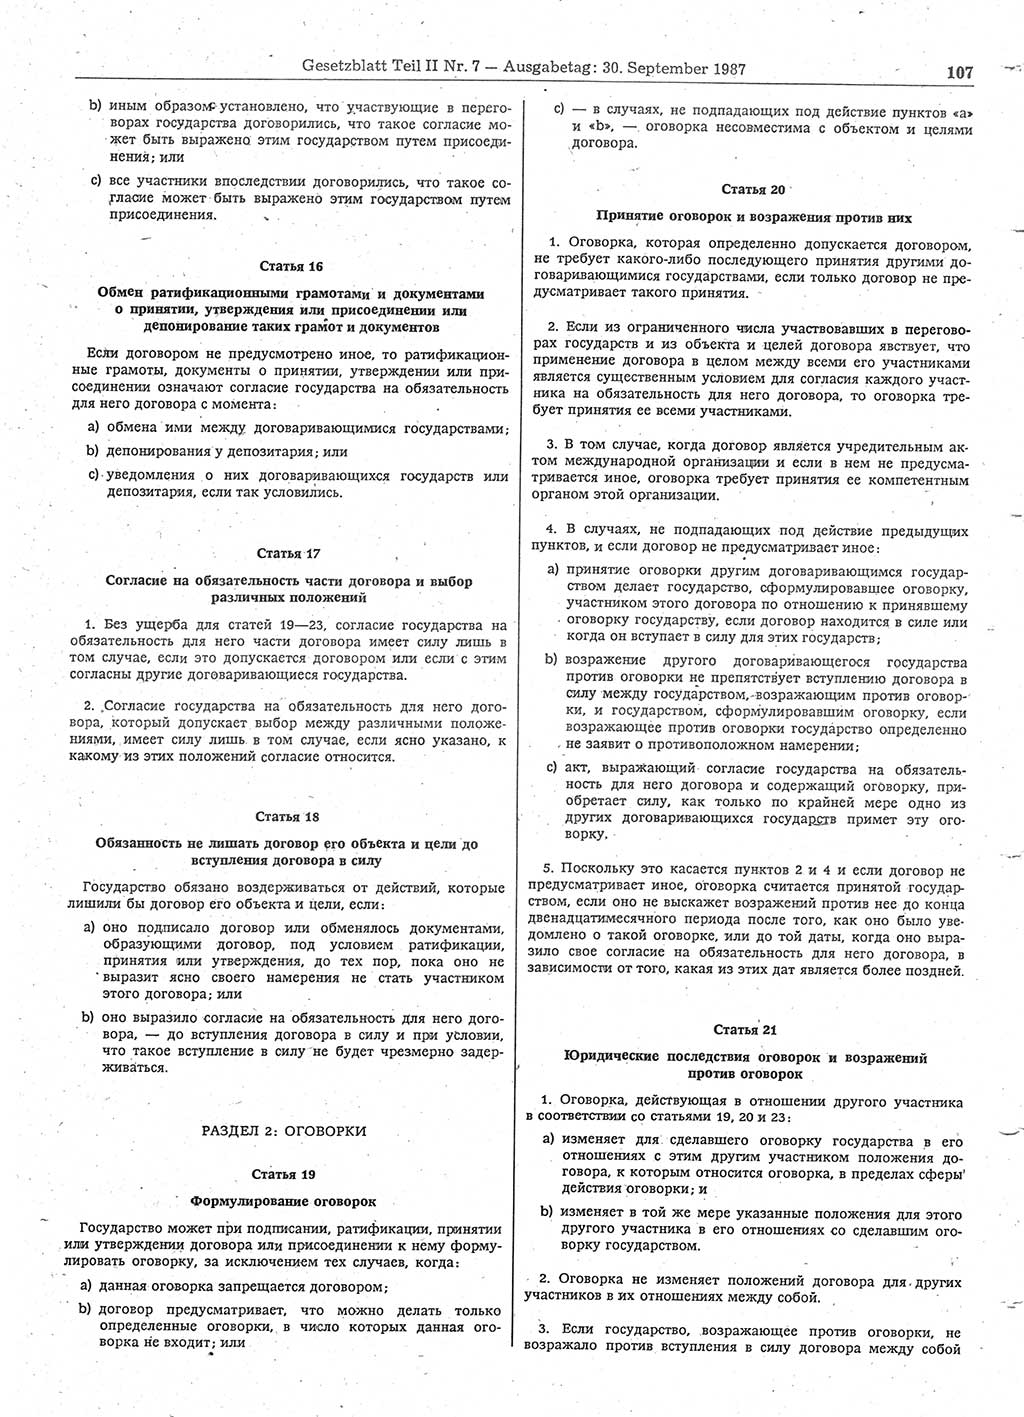 Gesetzblatt (GBl.) der Deutschen Demokratischen Republik (DDR) Teil ⅠⅠ 1987, Seite 107 (GBl. DDR ⅠⅠ 1987, S. 107)